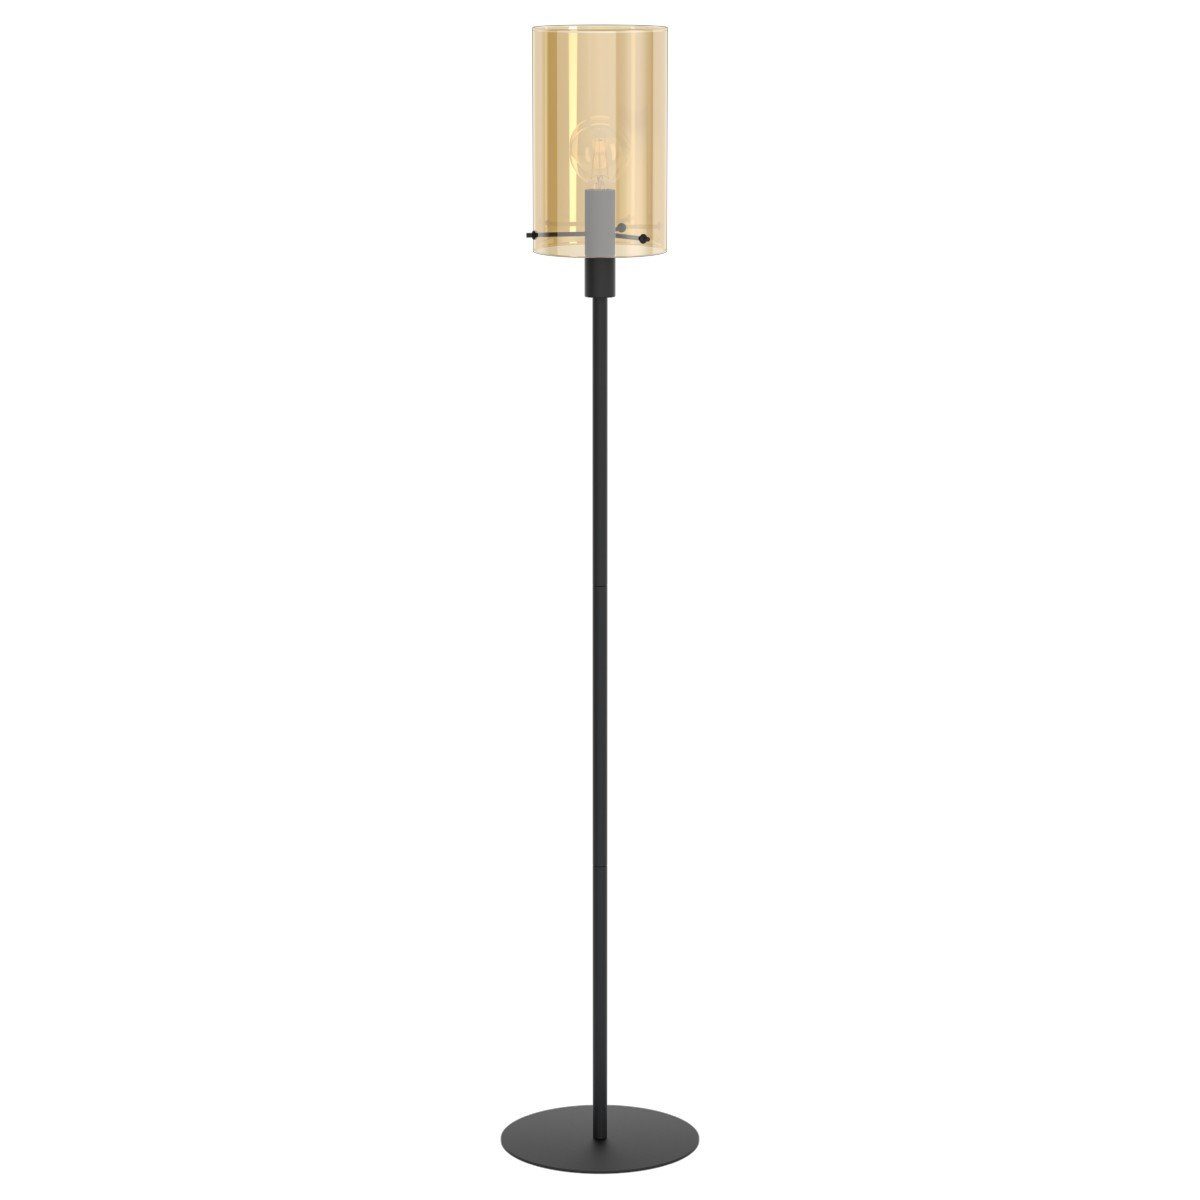 EGLO Stehlampe Polverara, ohne Leuchtmittel, LED-Retrofit oder Halogen, Akzentbeleuchtung fürs Wohnzimmer, Höhe ca. 155 cm, Amber-Glas | Standleuchten